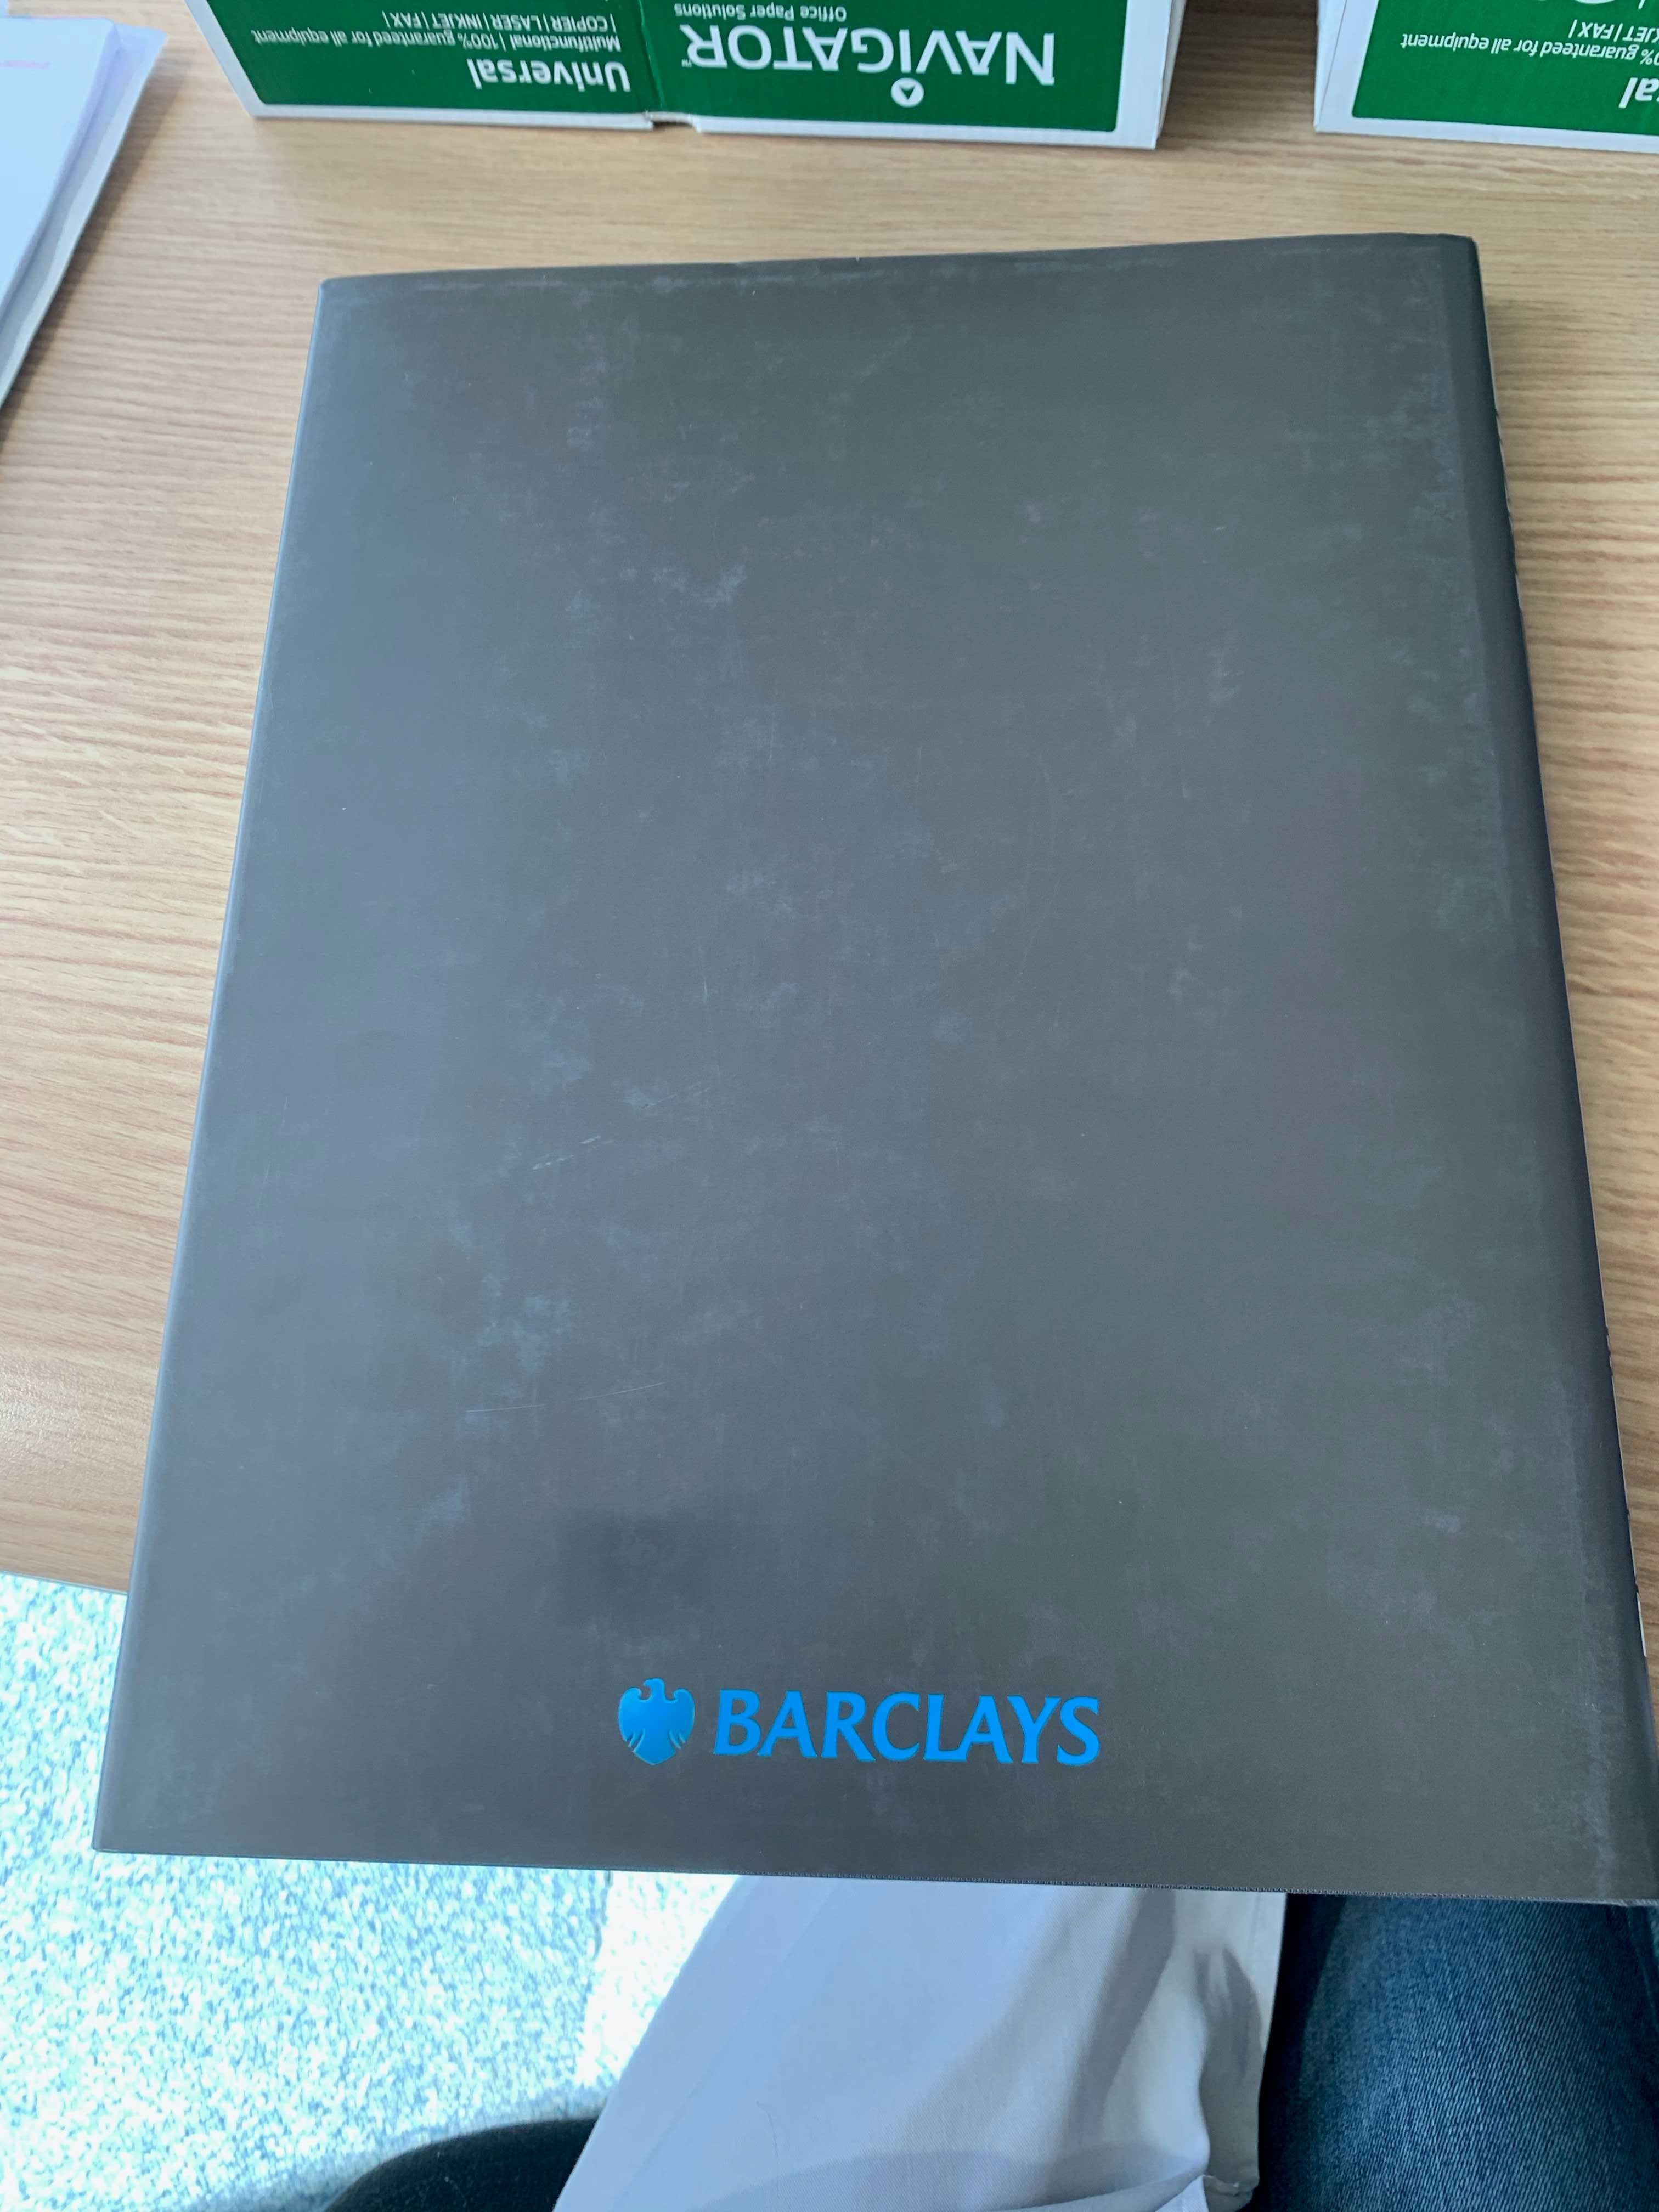 Livro O Barclays em Lisboa - a história de um lugar